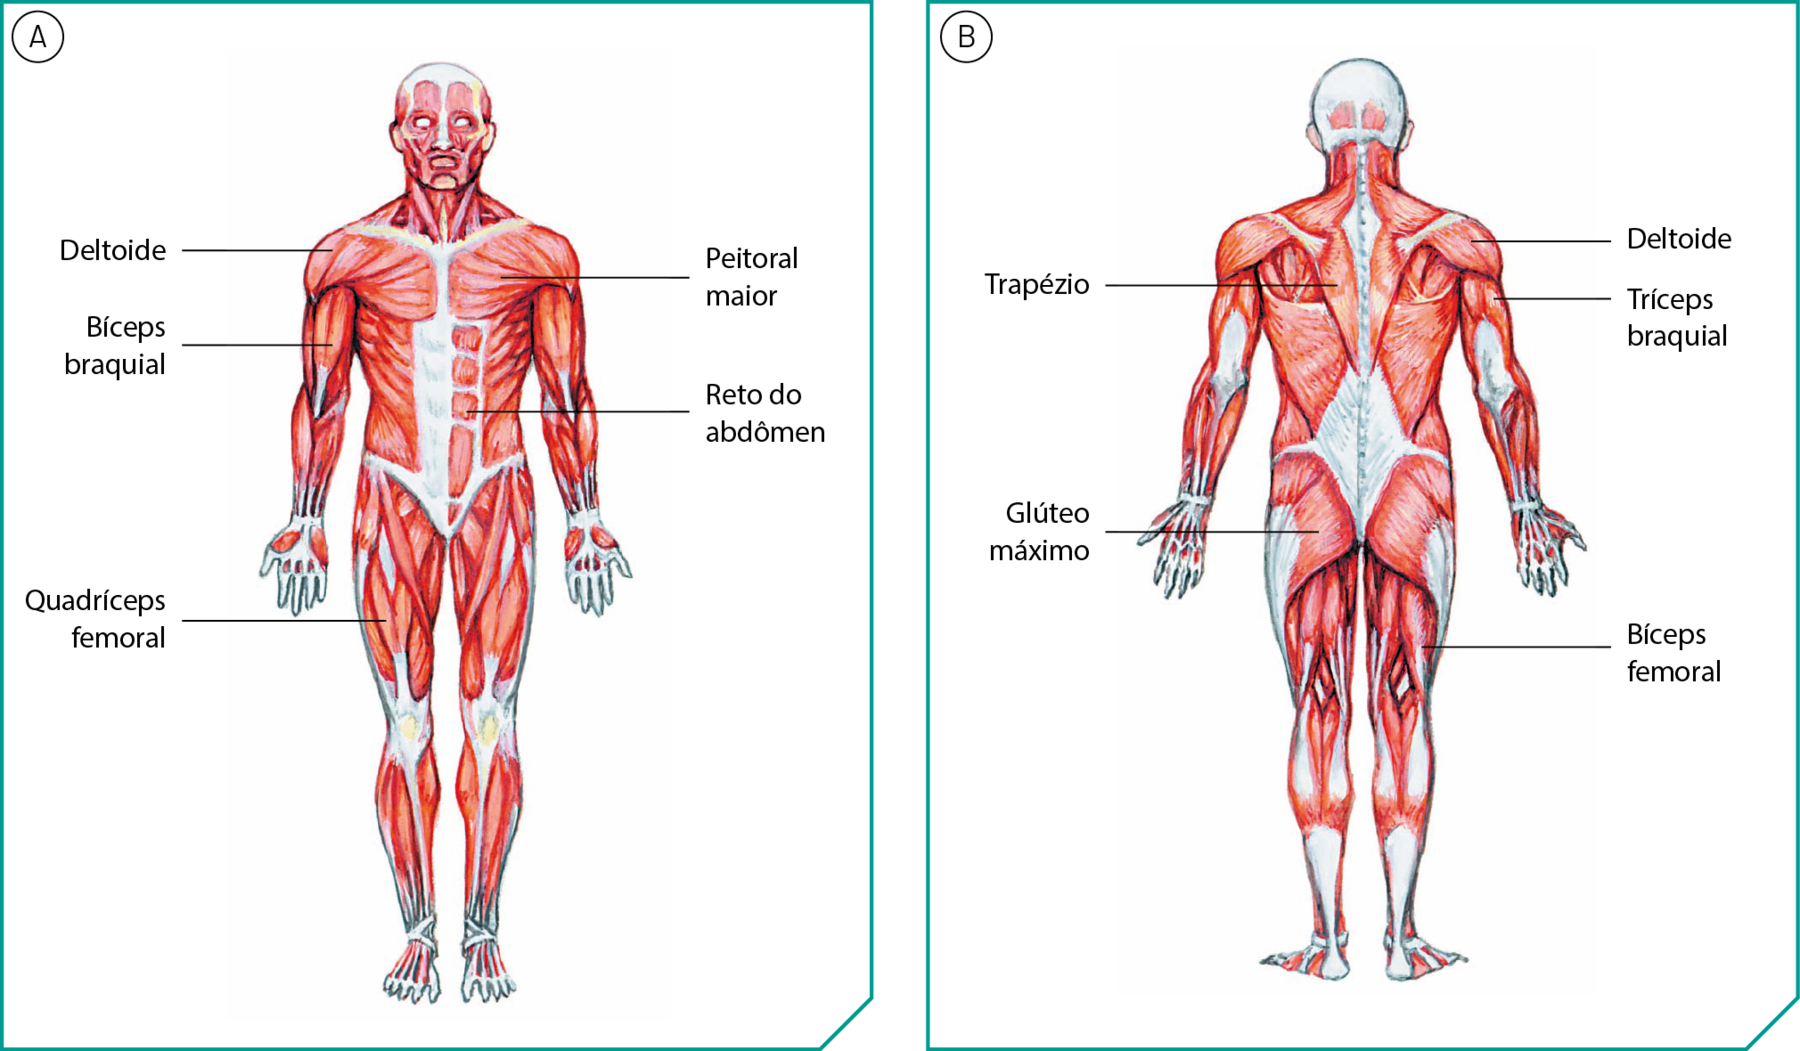 Ilustração A. Músculos de um ser humano de pé, virado para a frente. Há linhas de chamada nomeando alguns músculos. Do ombro: deltoide. Do peito: peitoral maior. Do braço: bíceps branquial. Da barriga: reto do abdômen. Da coxa: quadríceps femoral.  Ilustração B. Músculos de um ser humano de pé, virado para trás. Há linhas de chamada nomeando alguns músculos. Do ombro: deltoide. Das costas: trapézio. Do braço: tríceps braquial. Dos glúteos: glúteo máximo. Da coxa: bíceps femoral.